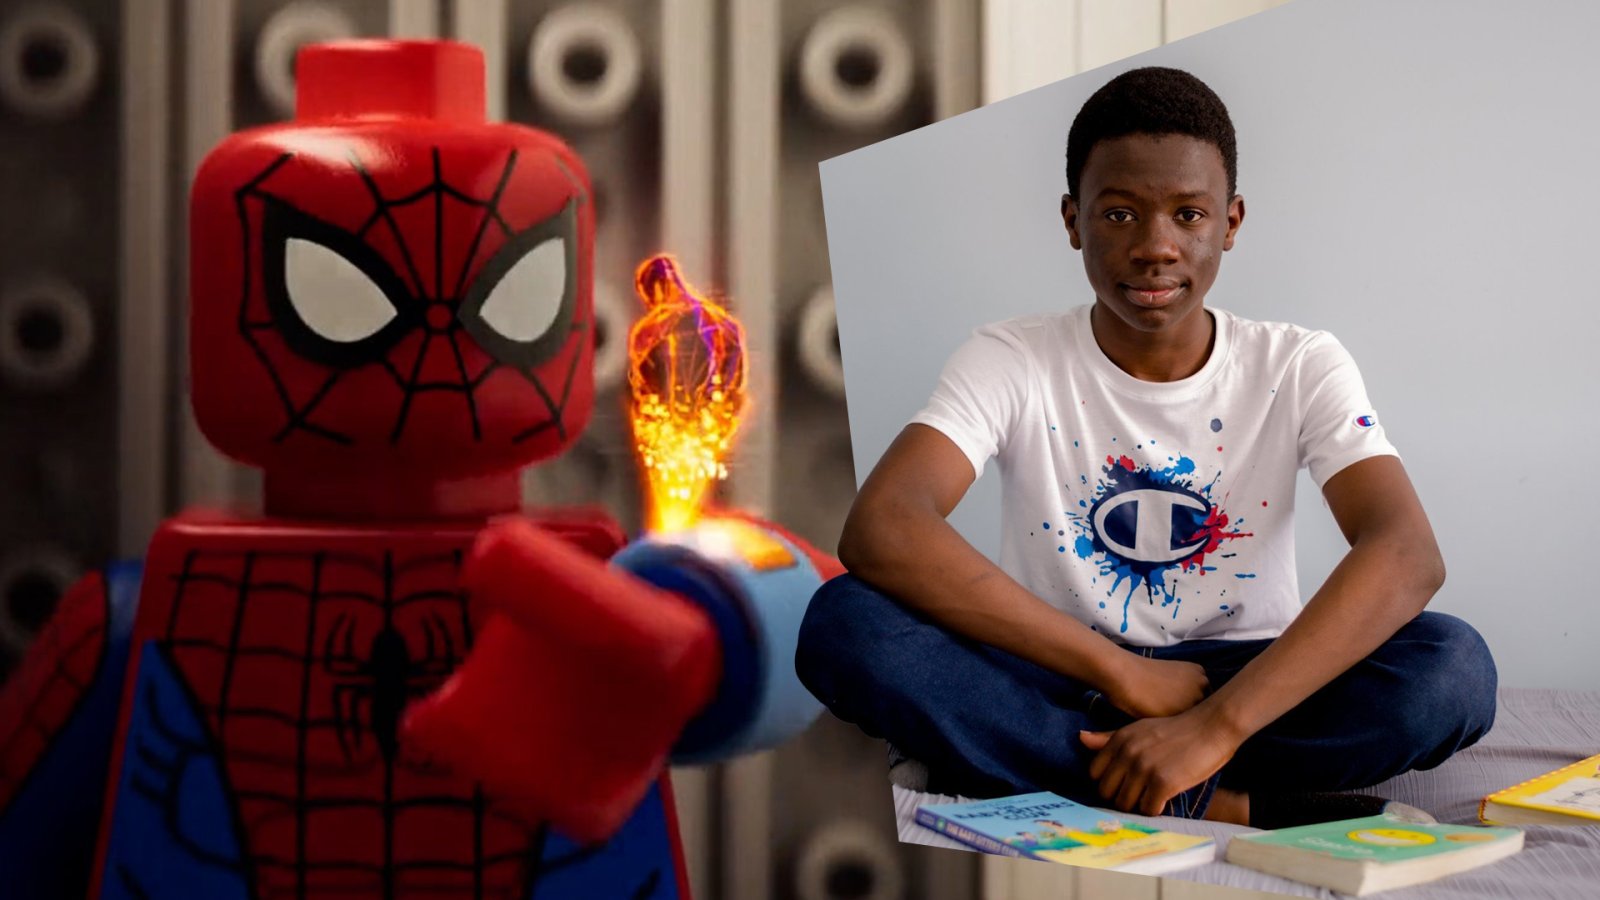 “ถูกกฏหมายแน่นะ ?” ผู้กำกับเผยเบื้องหลังฉาก Lego ฝีมือแอนิเมเตอร์วัย 14 ปีใน ‘Spider-Man: Across the Spider-Verse’